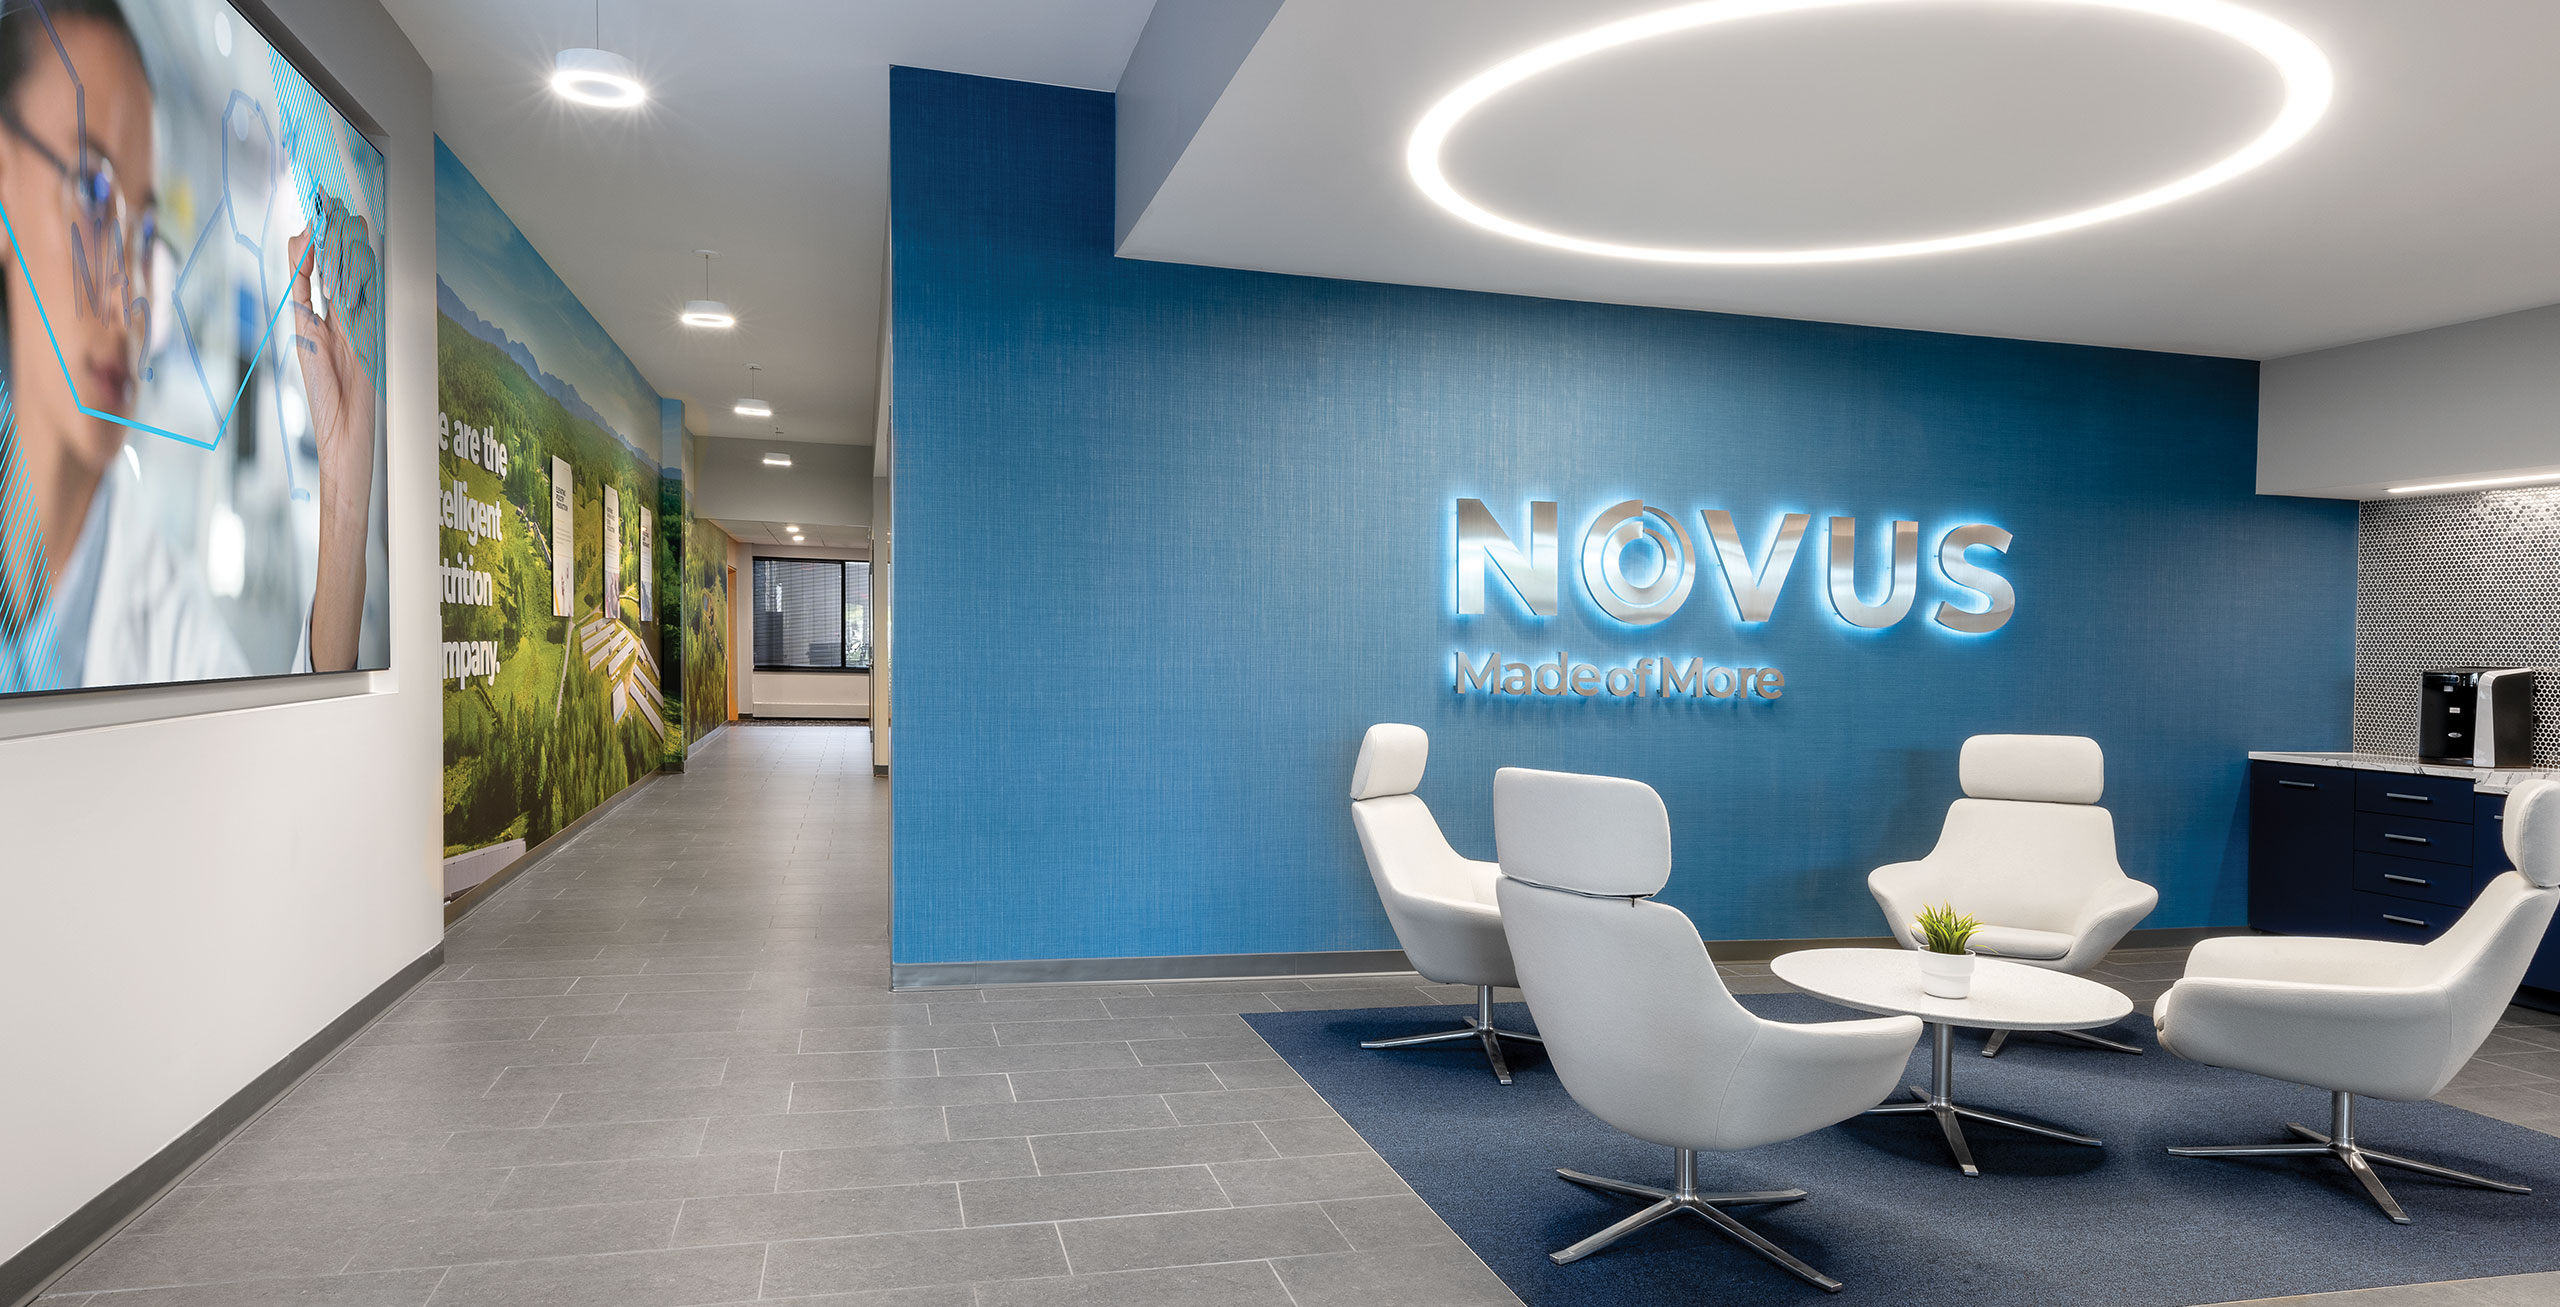 novus international workplace interior design architecture